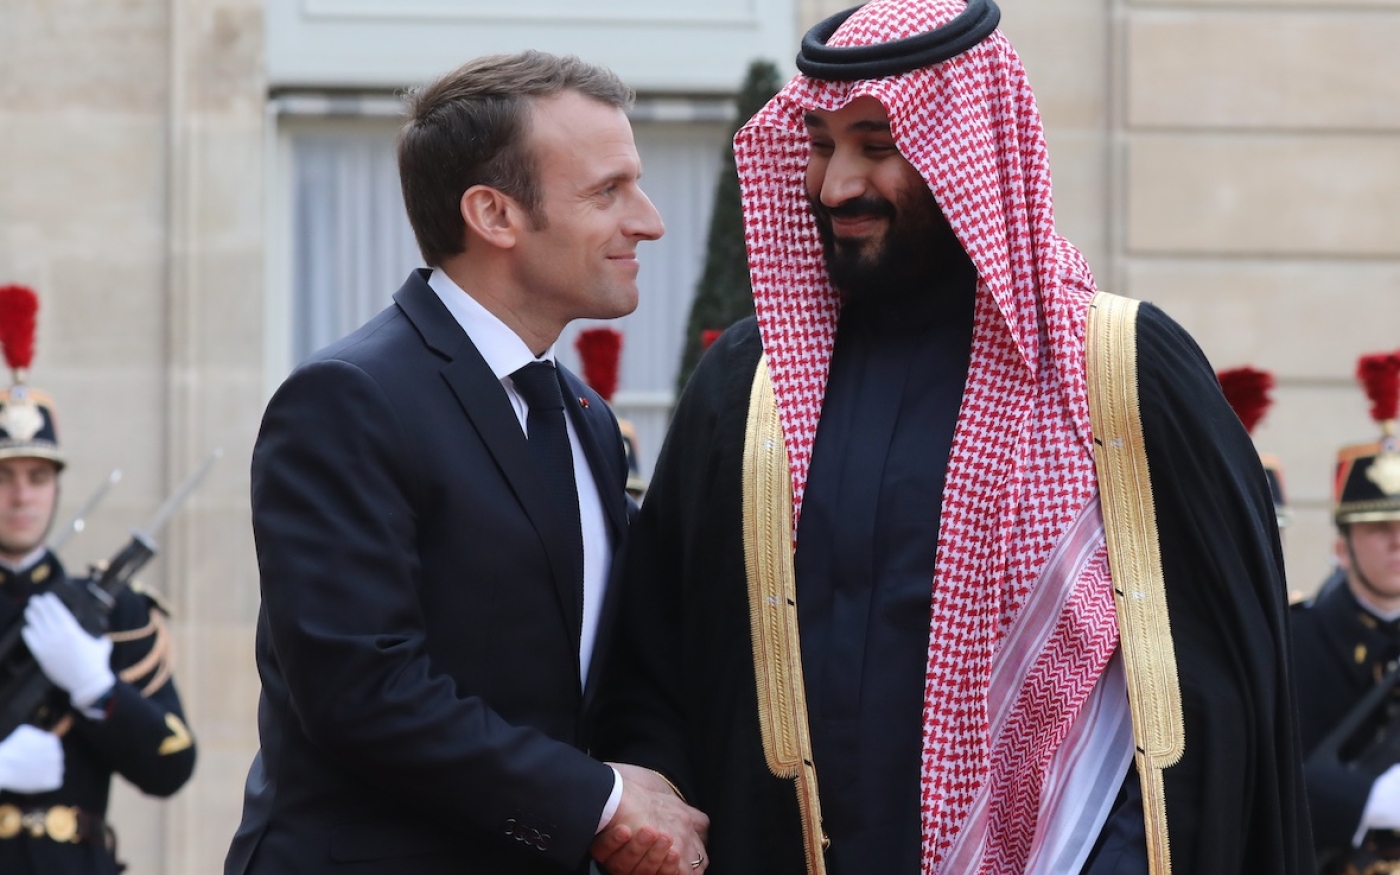 Le président français Emmanuel Macron accueille le prince héritier d’Arabie Saoudite Mohammed ben Salmane à son arrivée au palais présidentiel de l’Élysée, à Paris, le 10 avril 2018 (AFP)